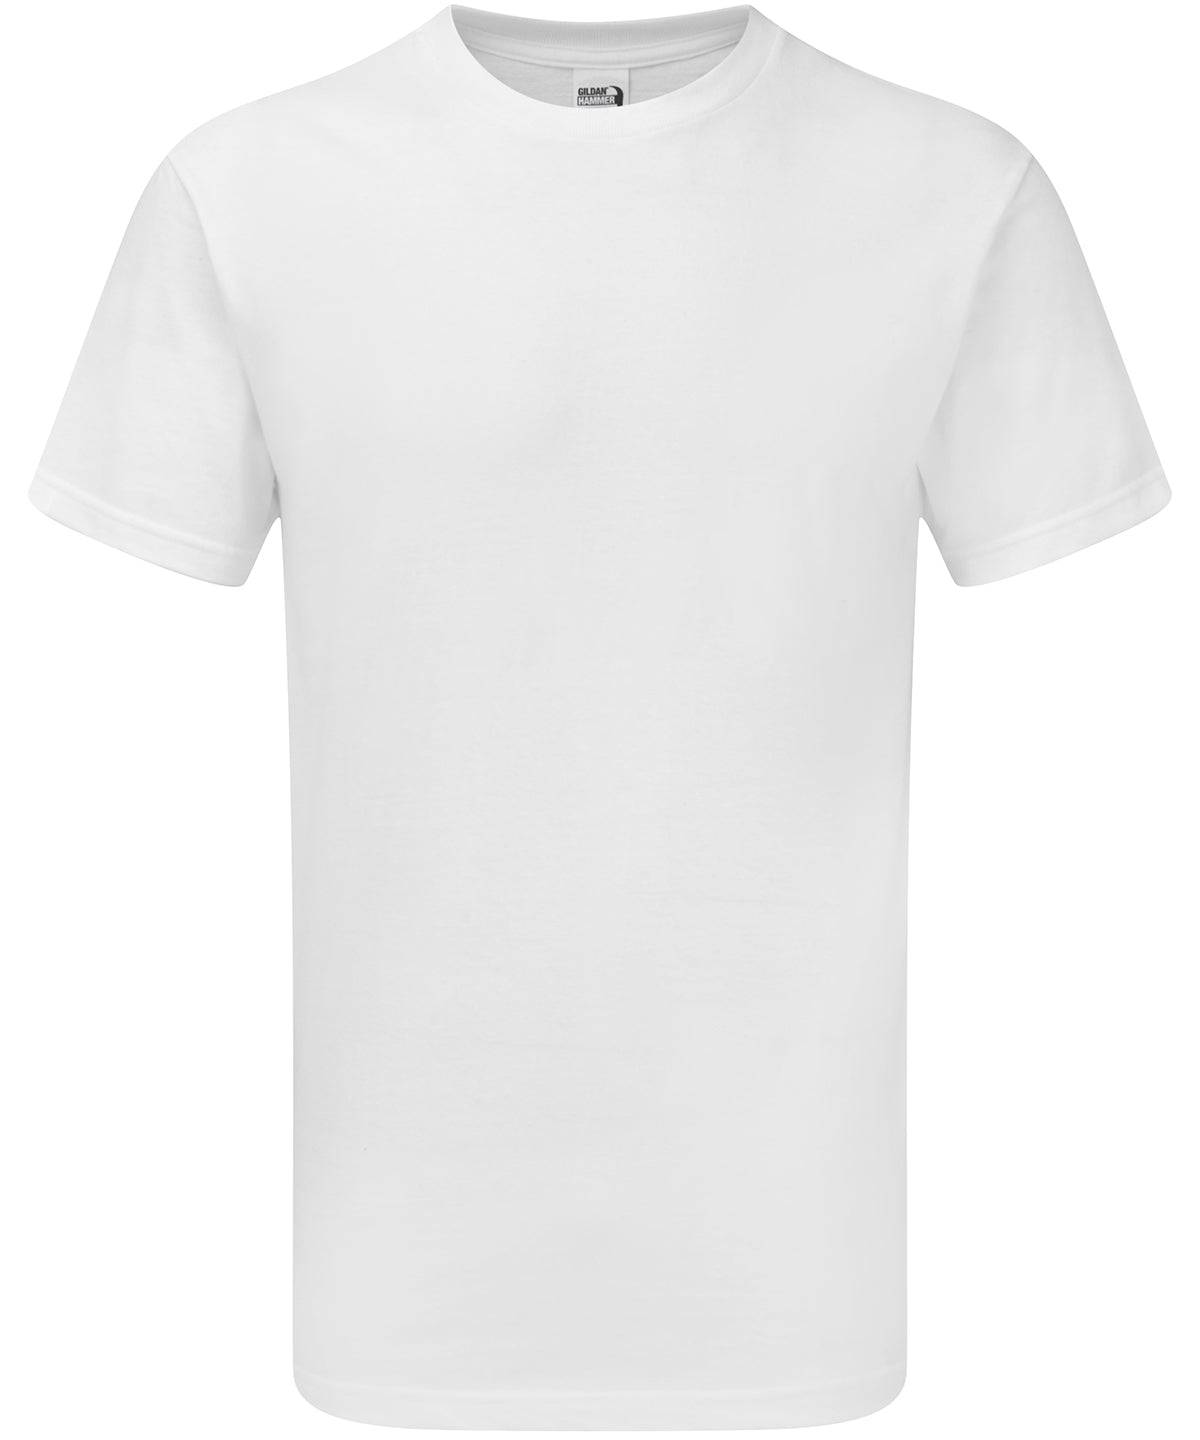 White - Hammer® adult t-shirt